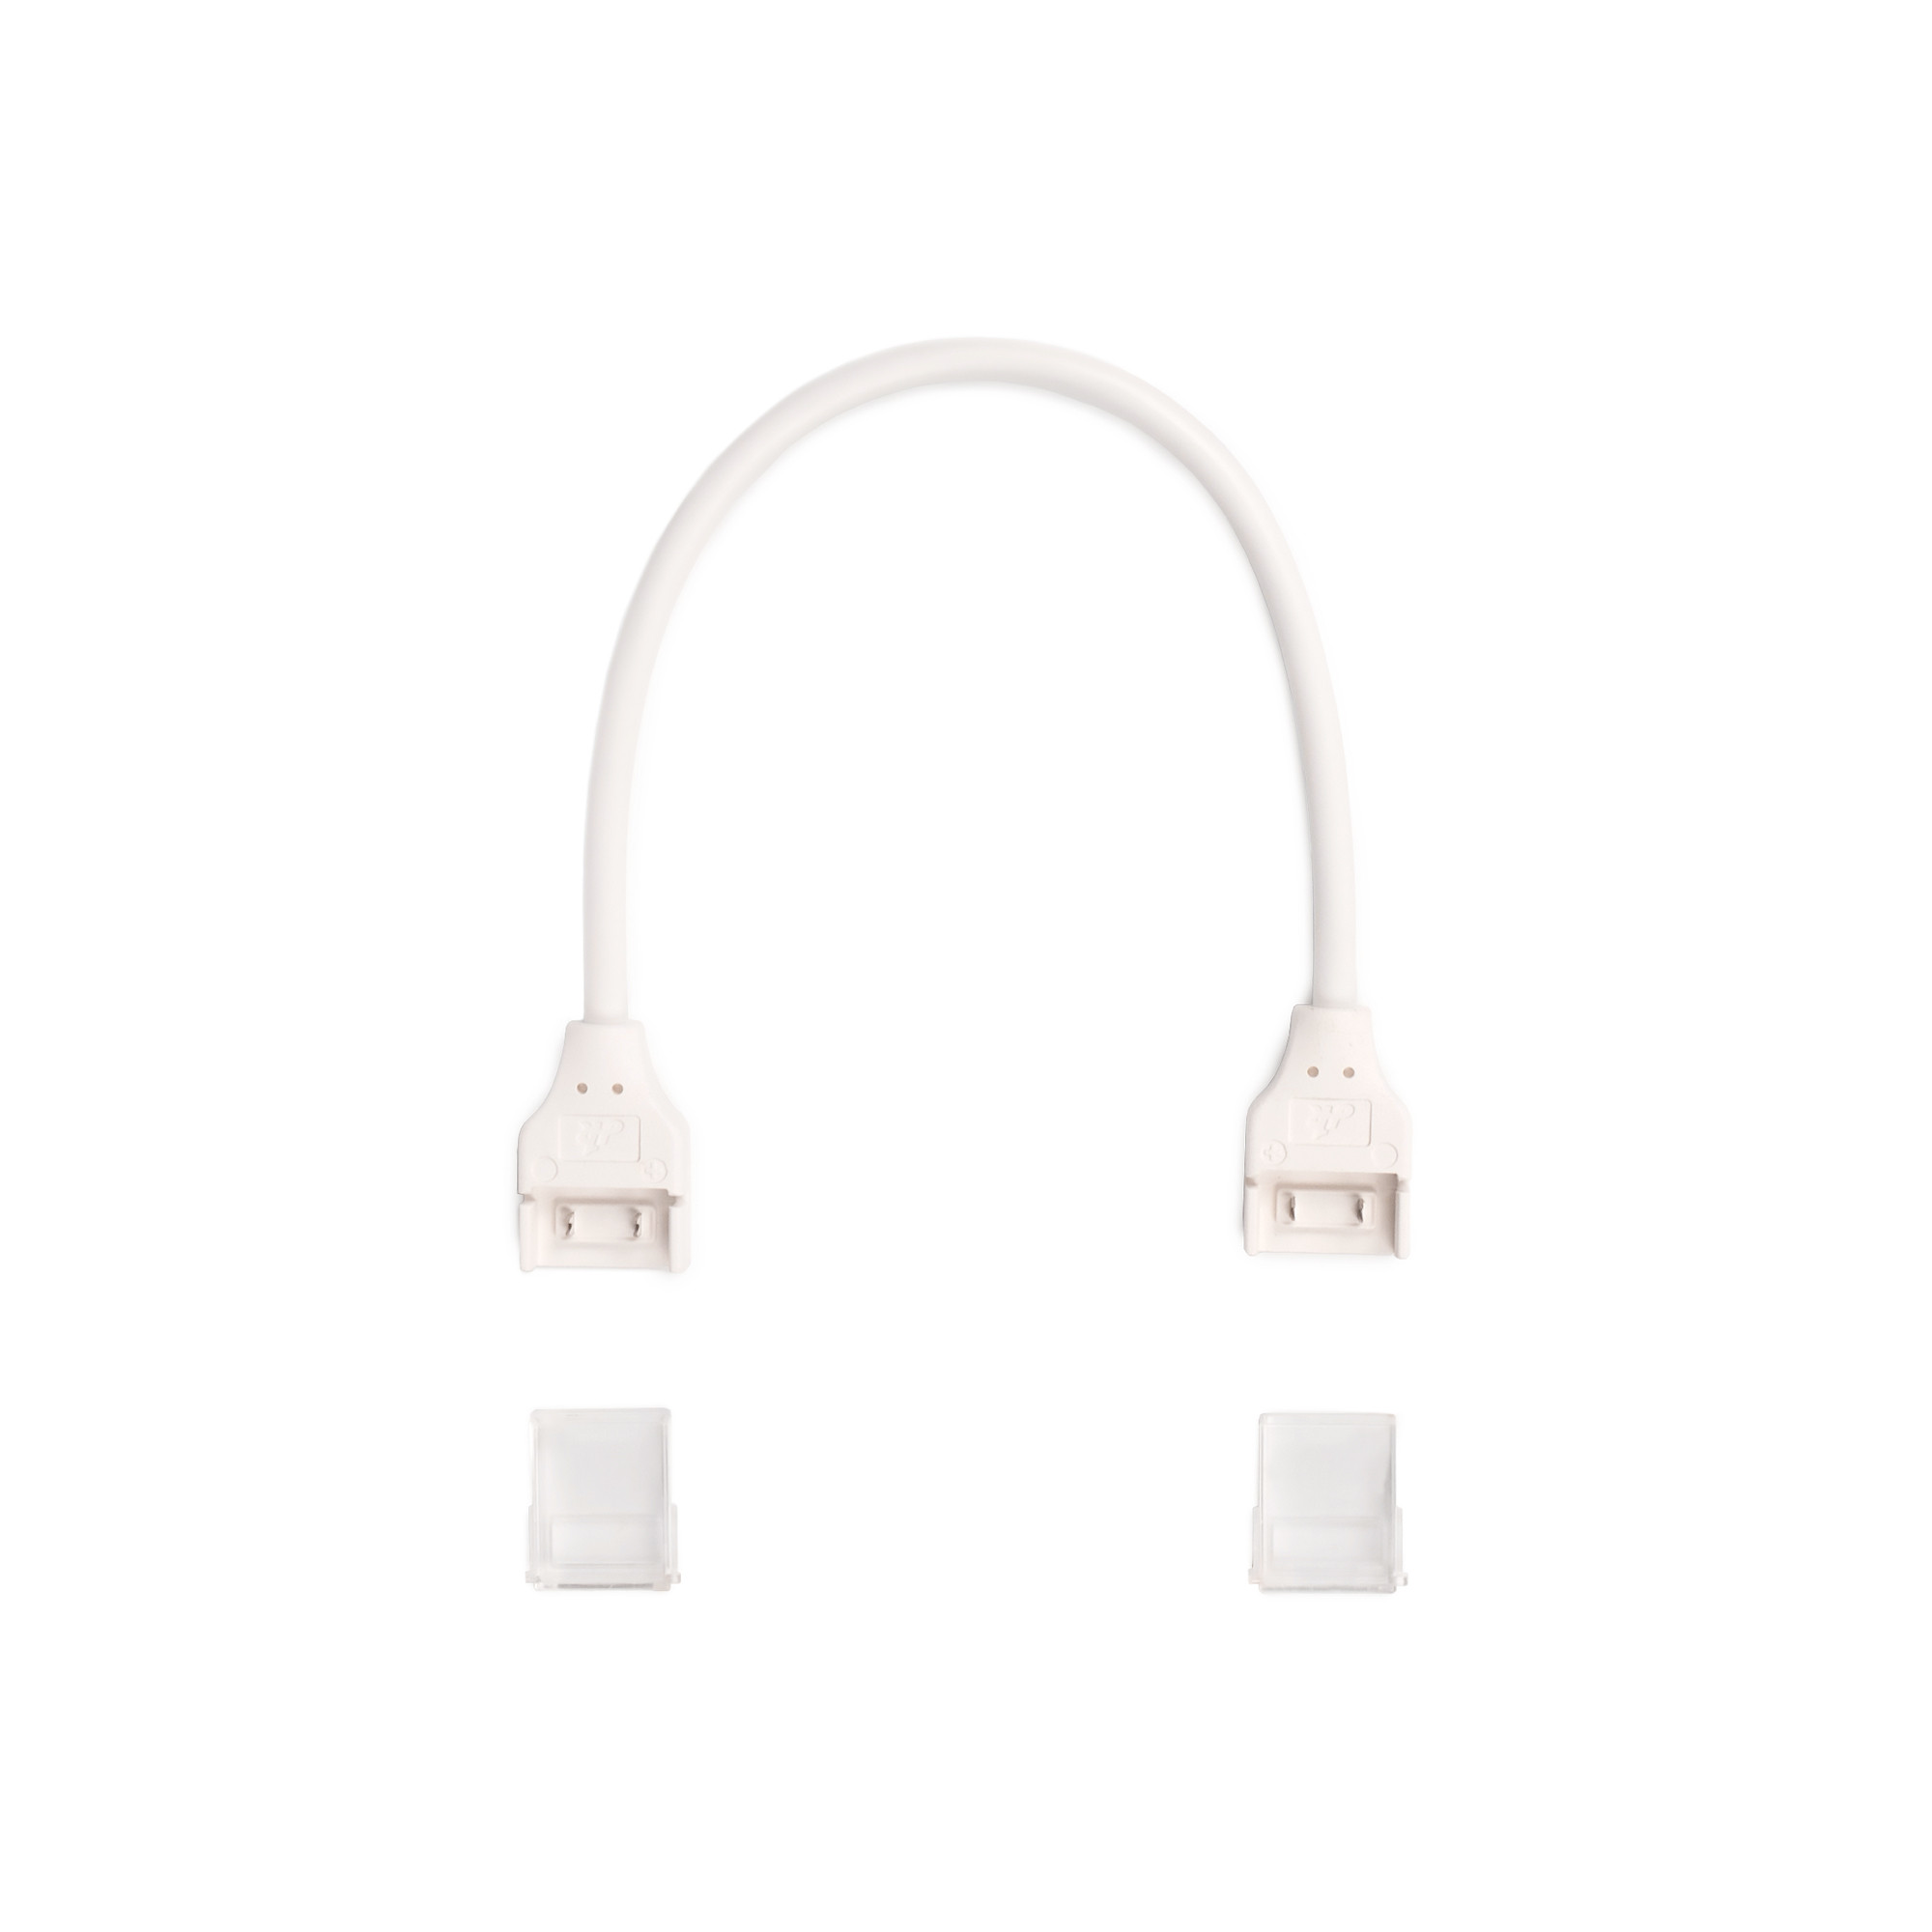 USB Anschlusskabel für USB-LED Streifen, 4,20 €